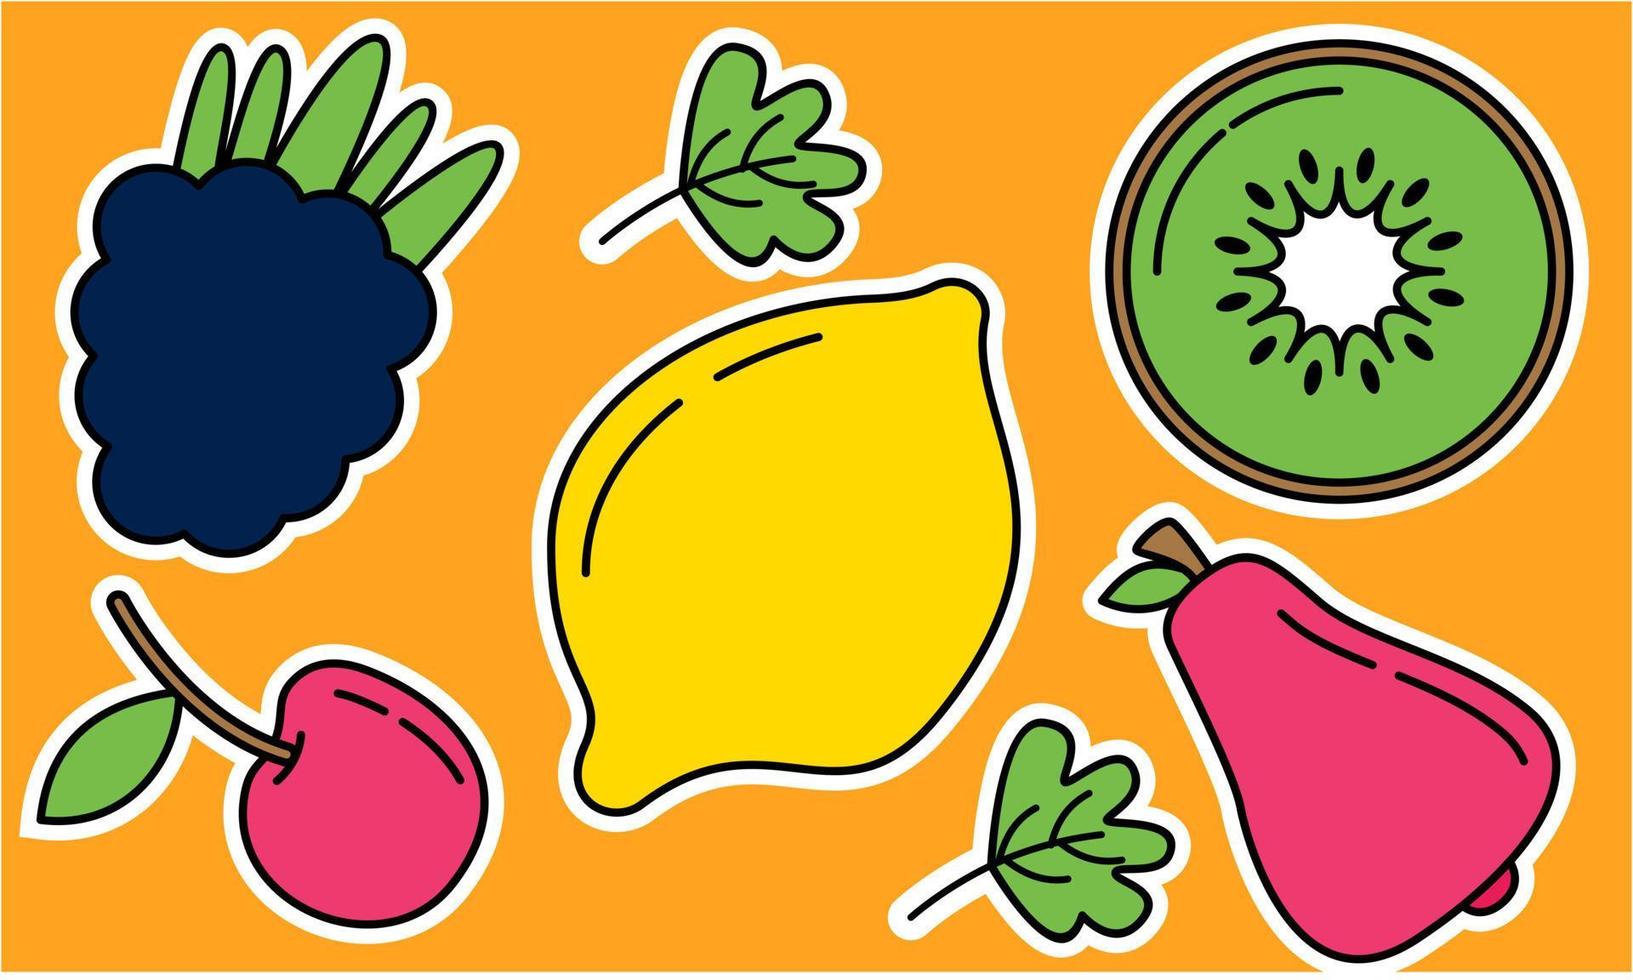 garabatear frutas. frutas tropicales naturales, frutas orgánicas o comida vegetariana. iconos aislados vectoriales vector